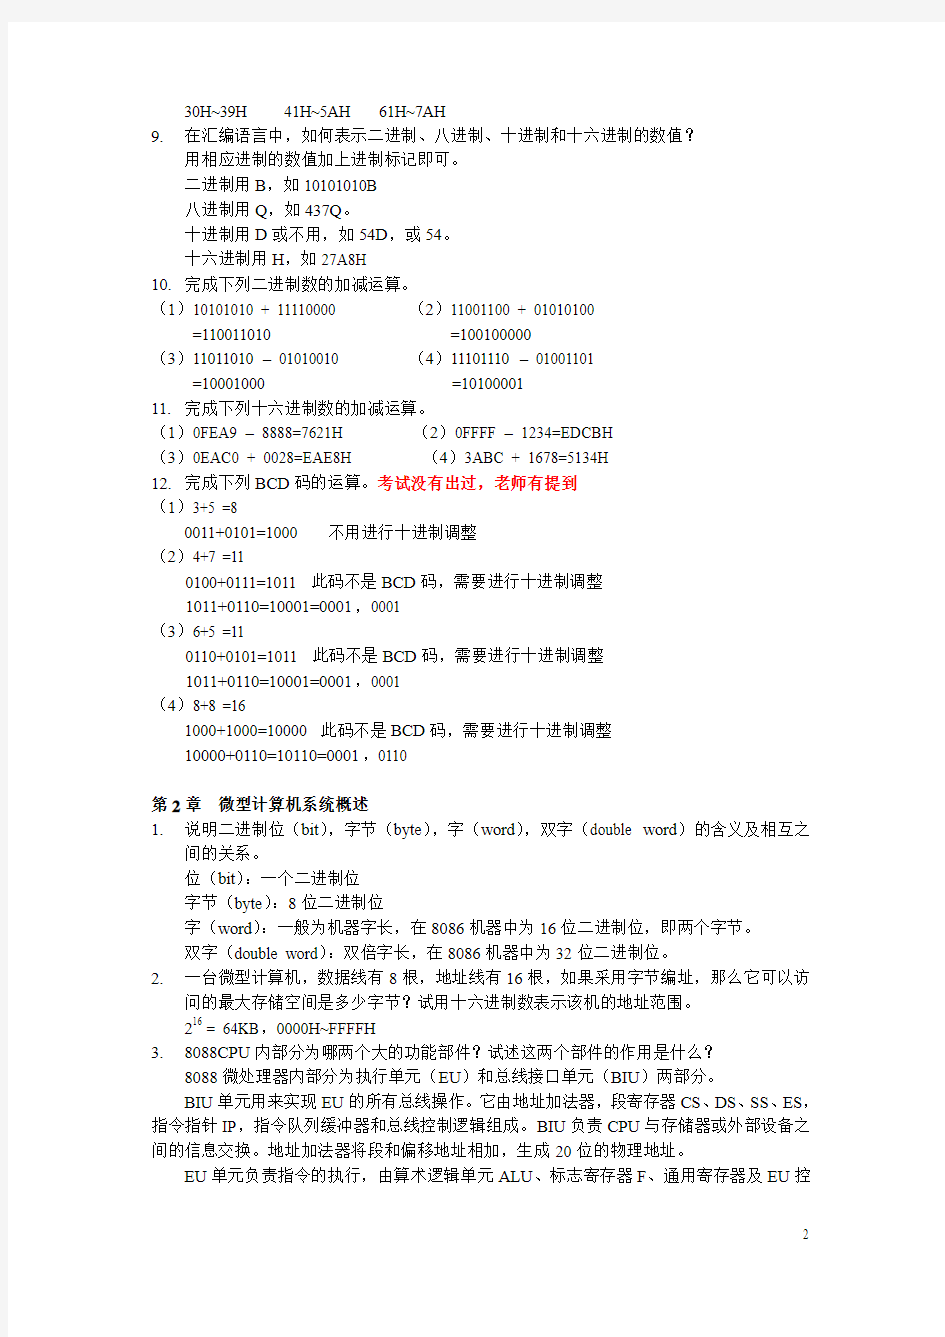 惠州学院考试 -汇编语言2版习题答案备份